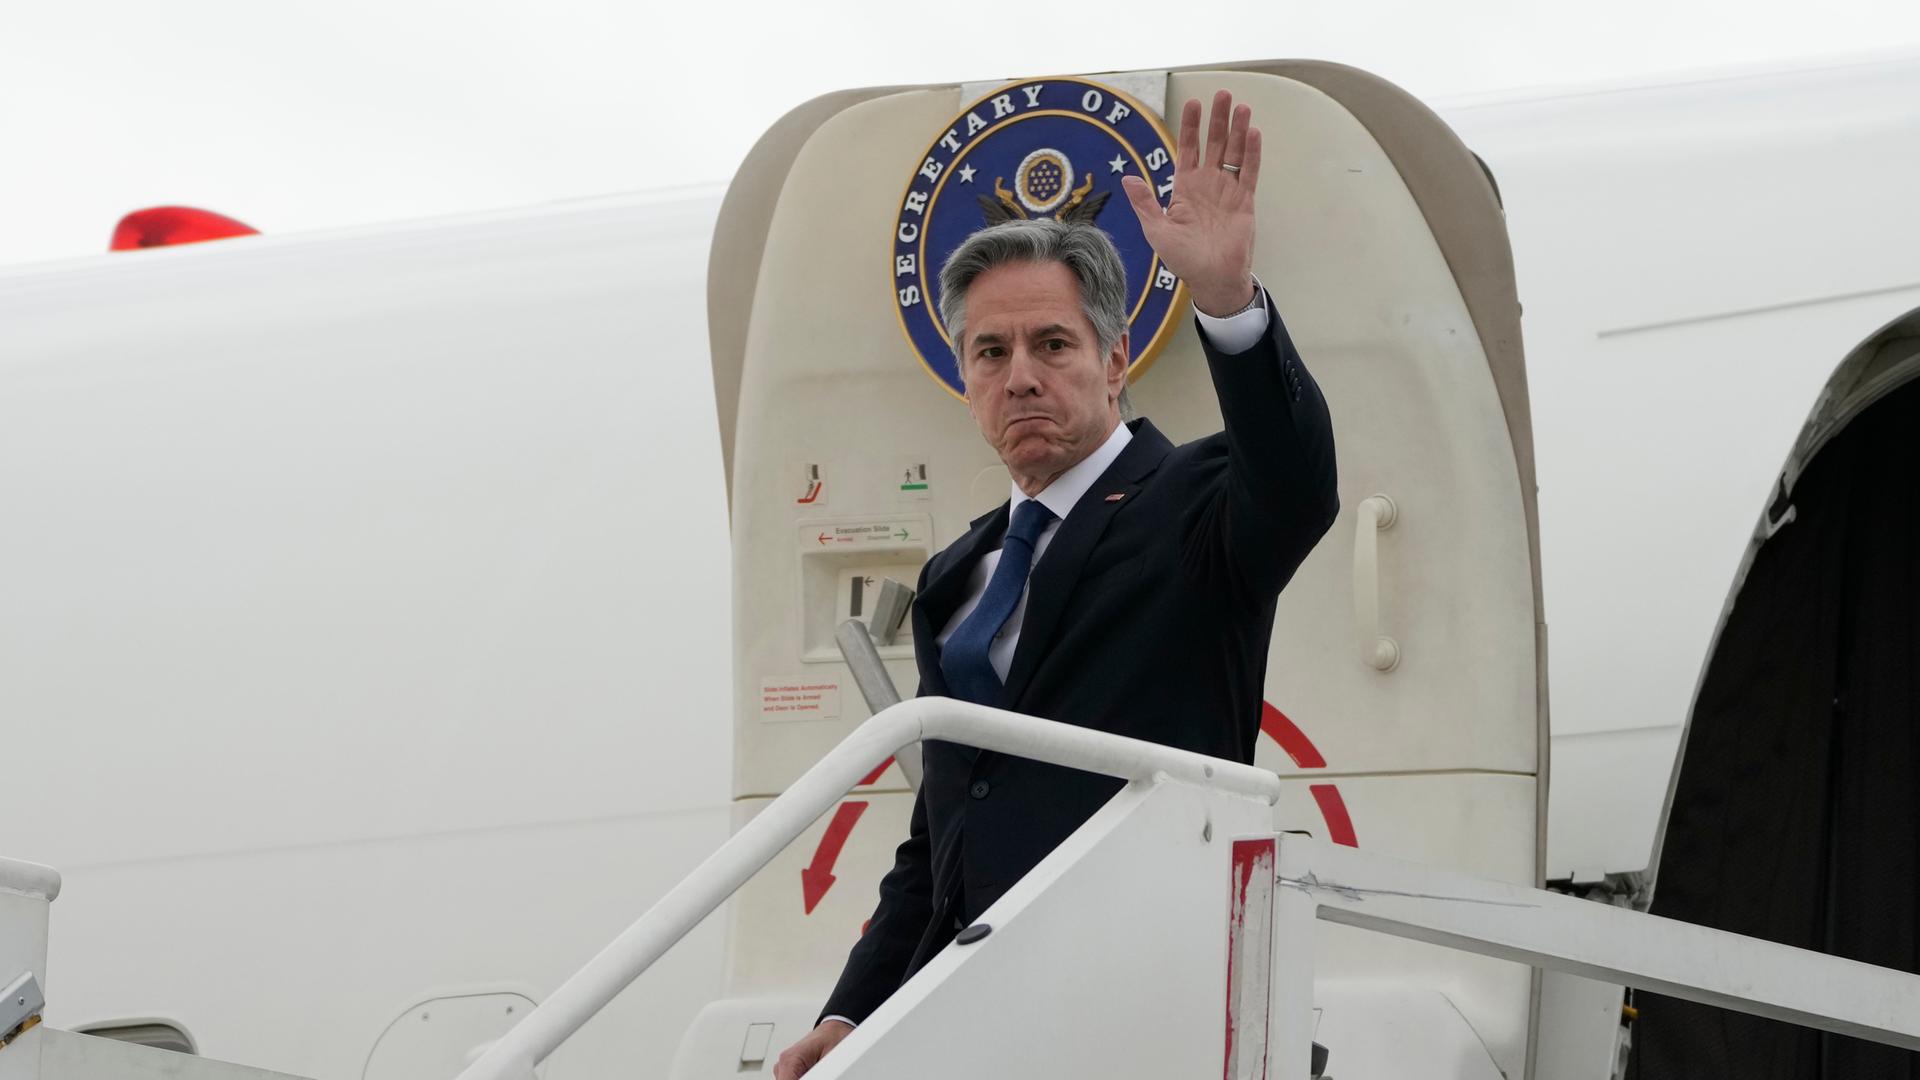 Das Bild zeigt Antony Blinken, US-Außenminister, bei seinem Eintreffen in Mexiko. Er winkt beim Verlassen seines Flugzeugs.